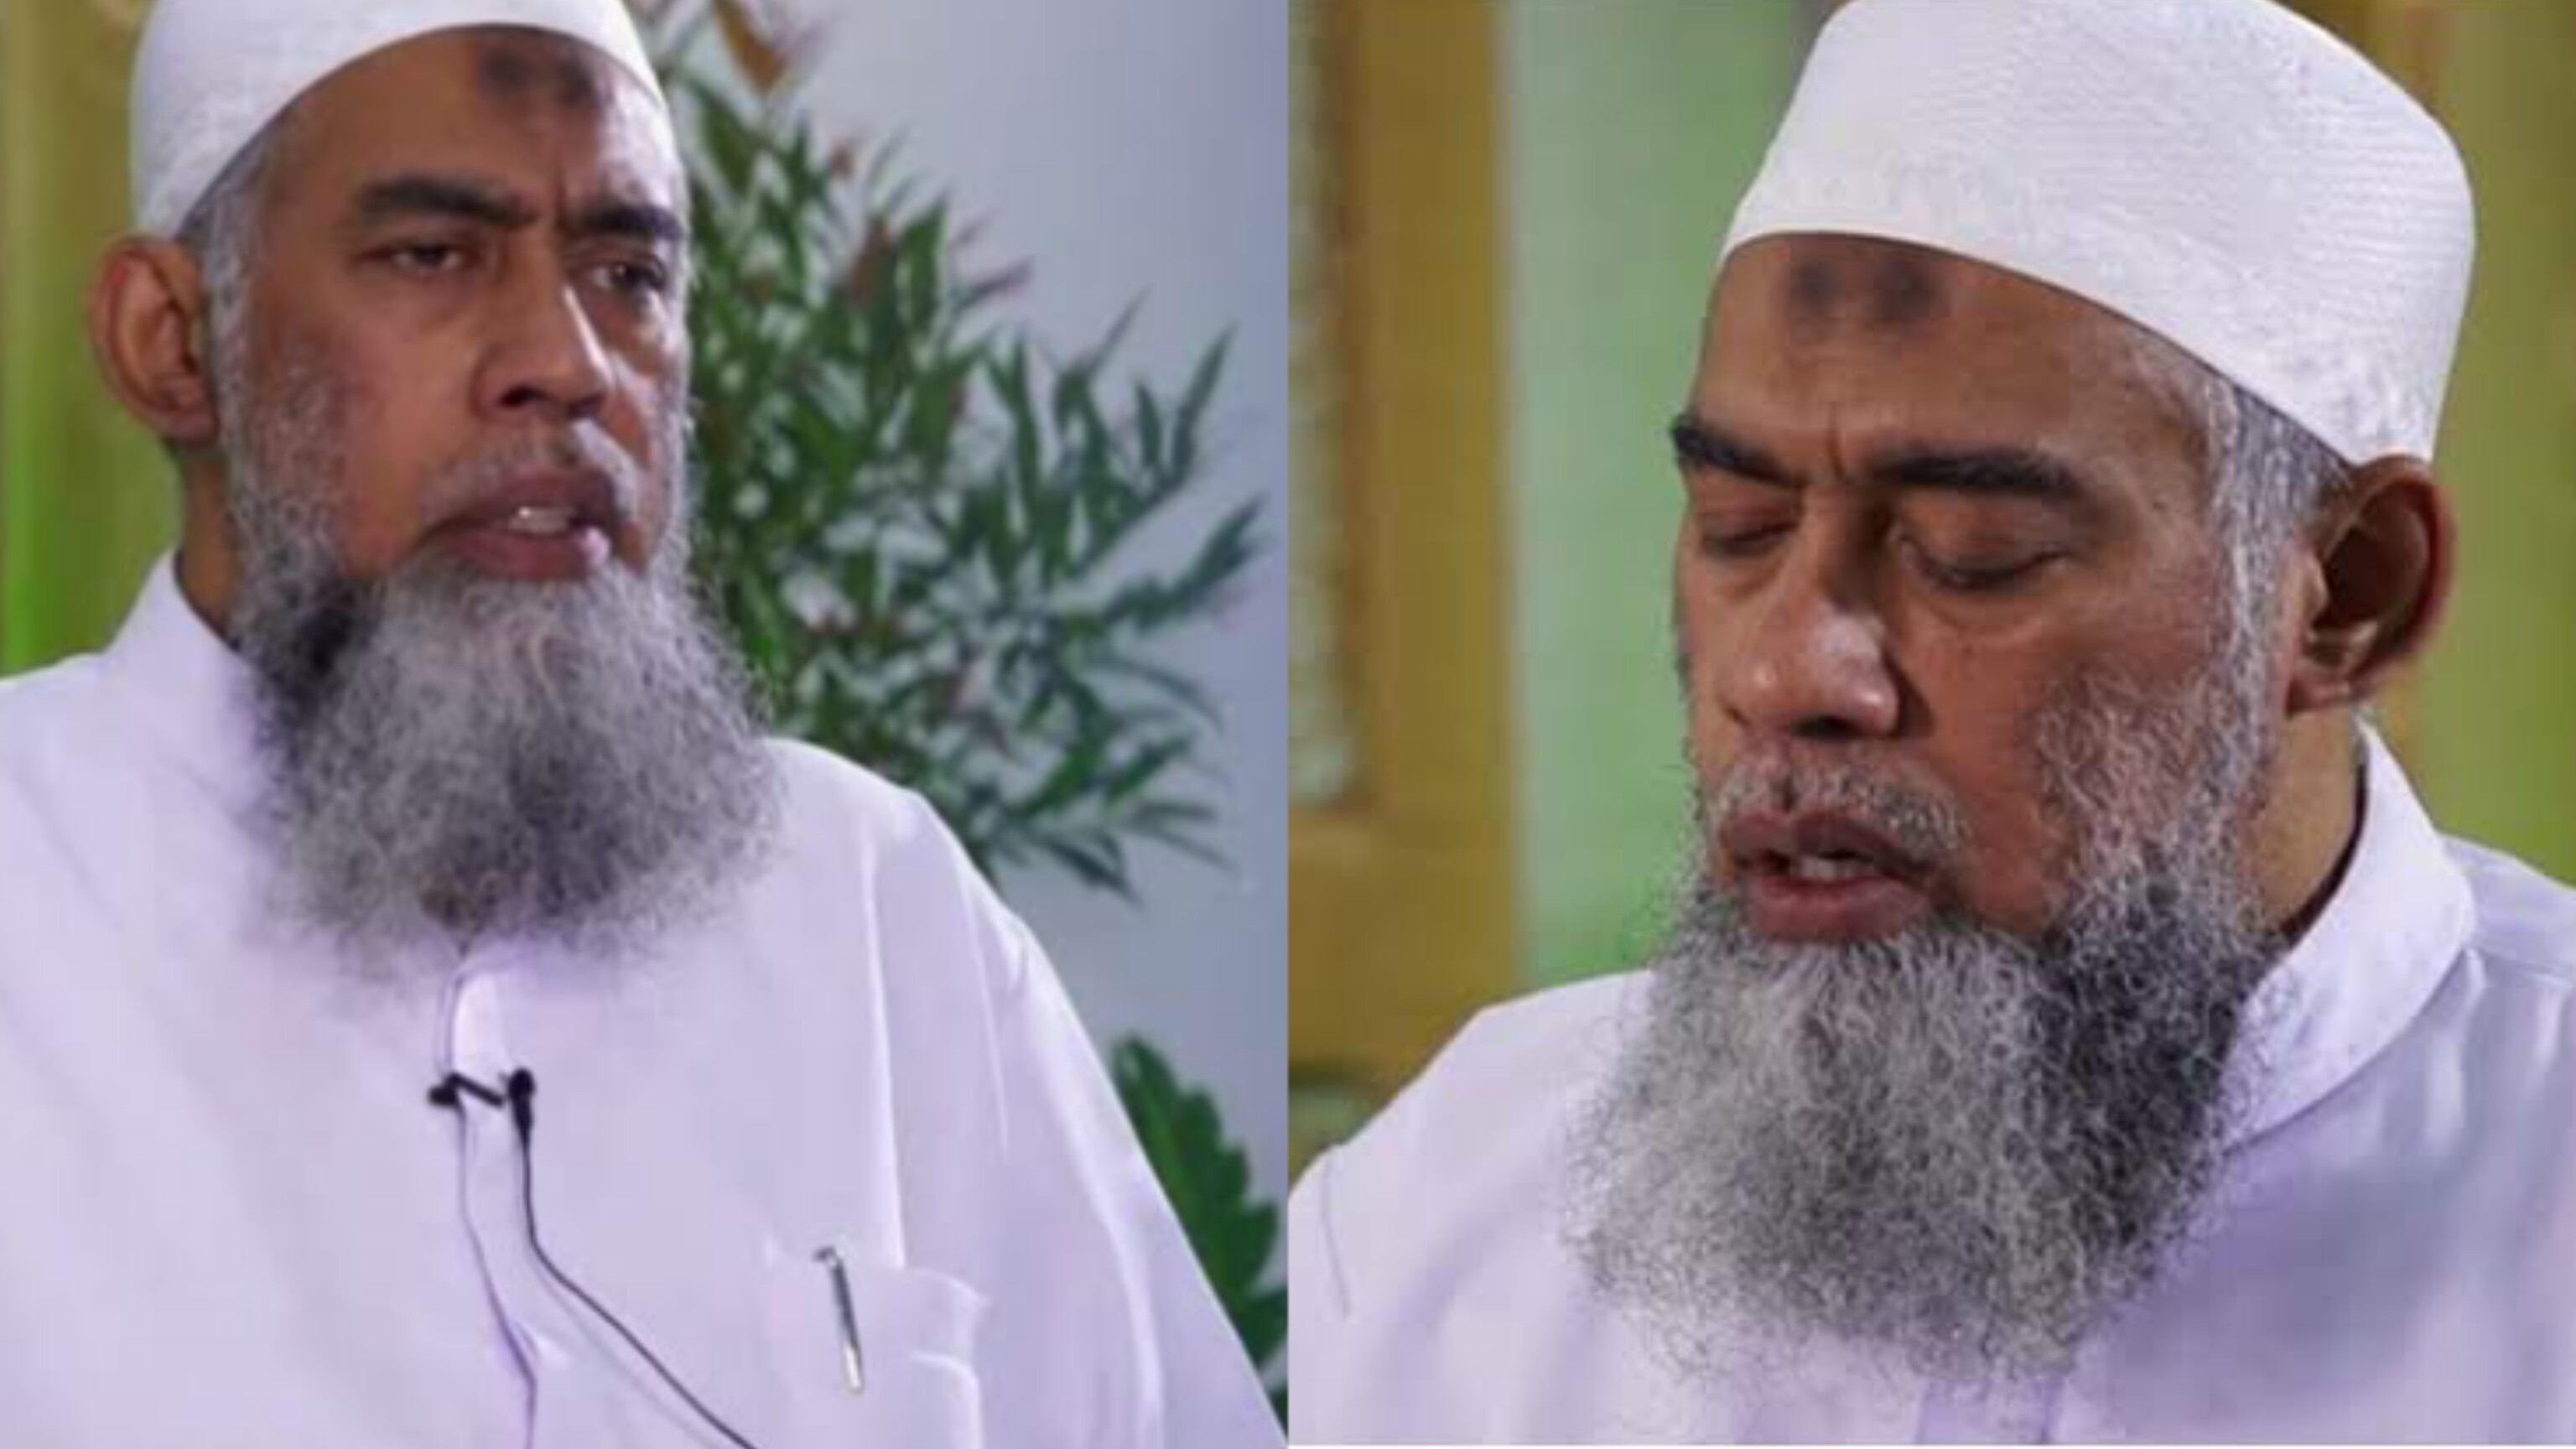 Ustaz Yazid bin Abdul Qodir Jawas Meninggal Dunia Usai Melaksanakan Ibadah Haji: Sempat Drop di Kota Mekah